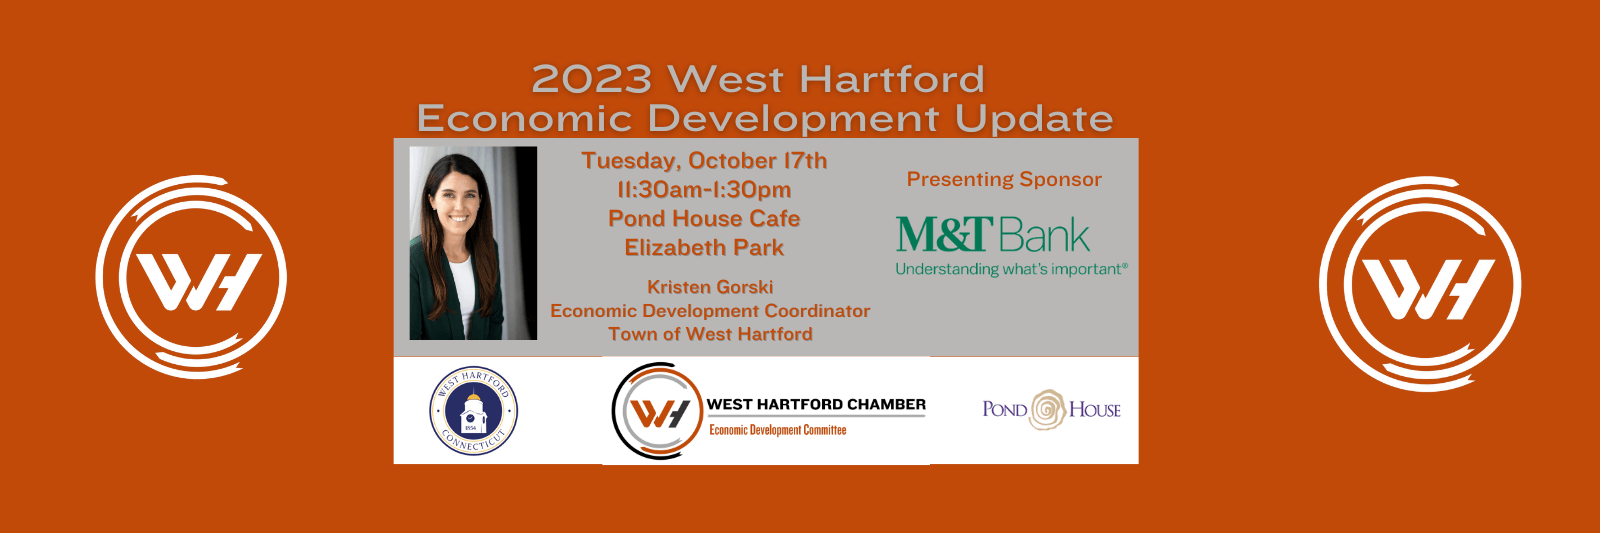 2023West Hartford Economic Development Update